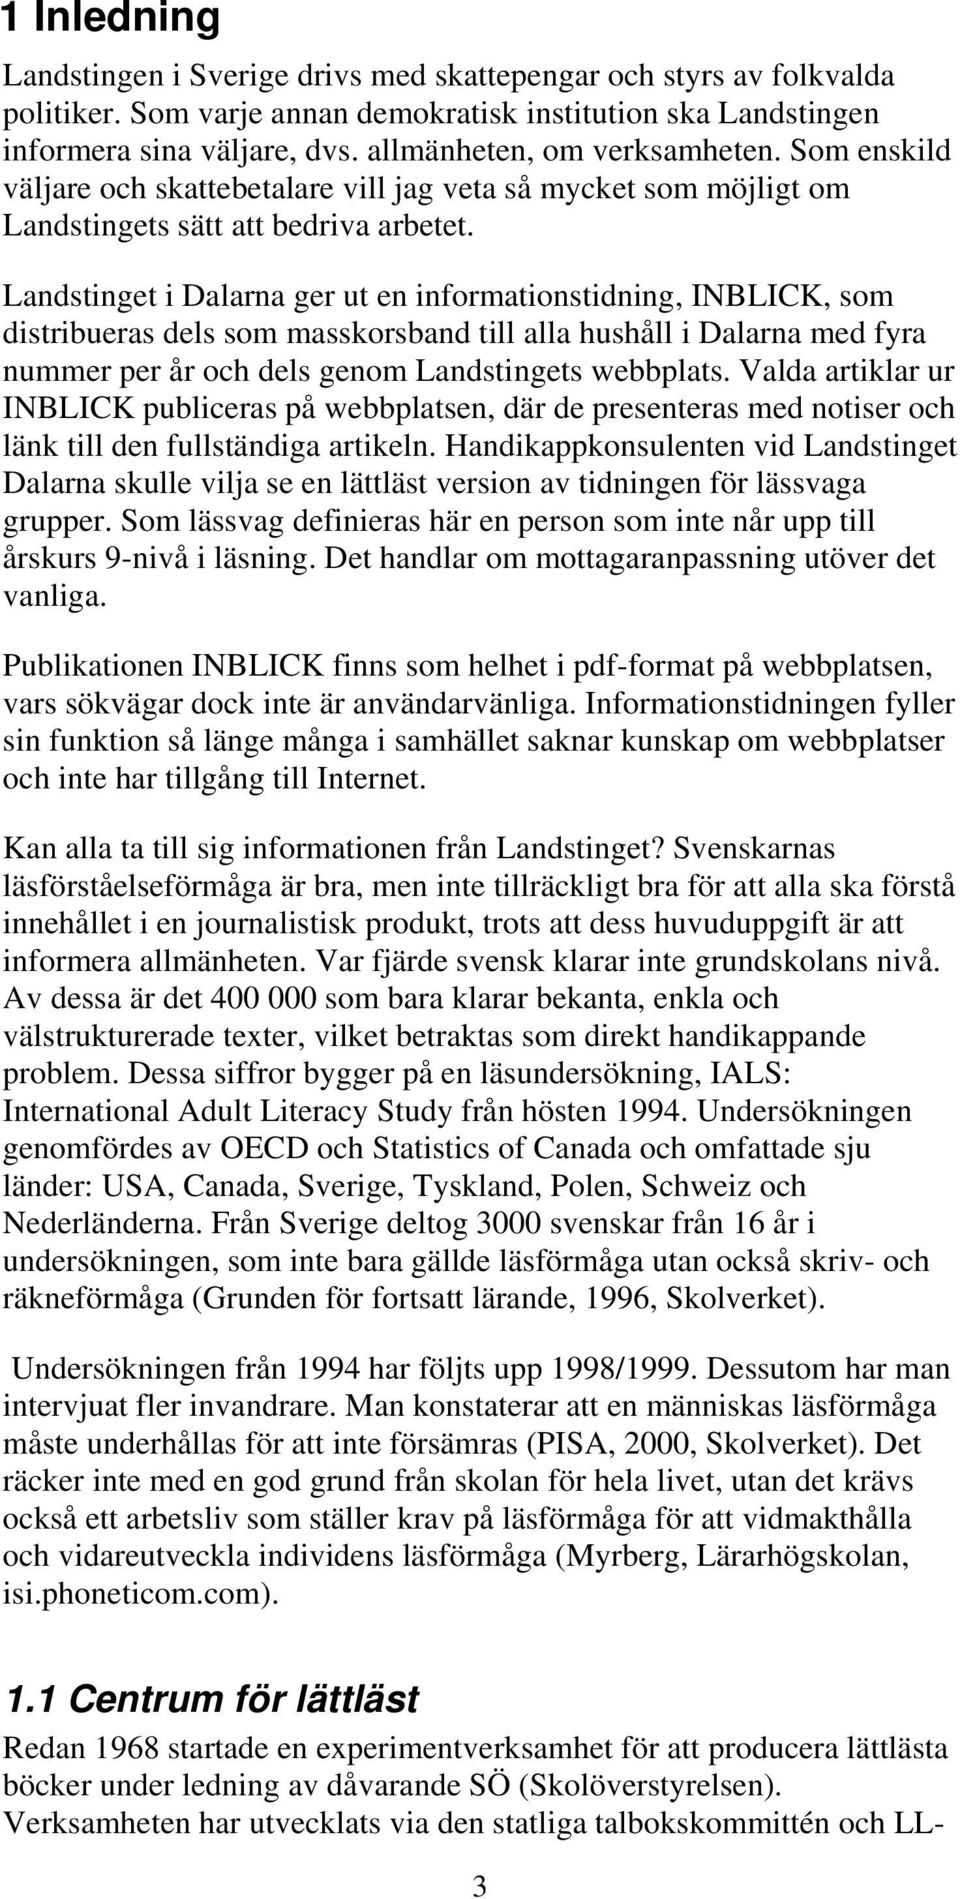 Landstinget i Dalarna ger ut en informationstidning, INBLICK, som distribueras dels som masskorsband till alla hushåll i Dalarna med fyra nummer per år och dels genom Landstingets webbplats.